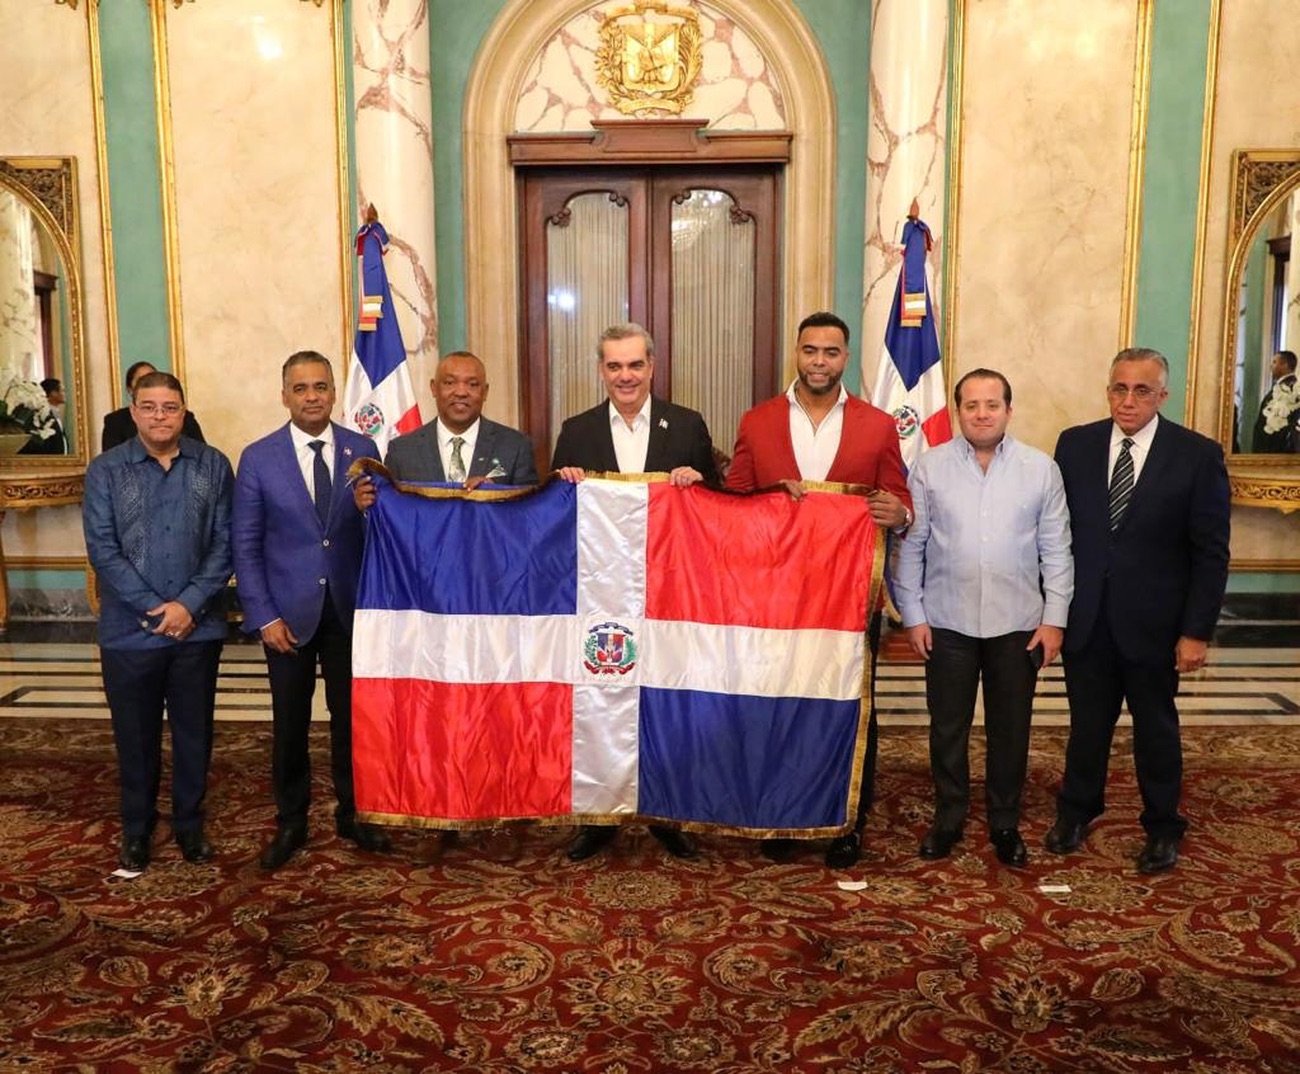 REPÚBLICA DOMINICANA: Presidente FEDOBE, Juan Núñez, agradece al Presidente Luis Abinader apoyo al béisbol; dice pueblo lo agradecerá grandemente